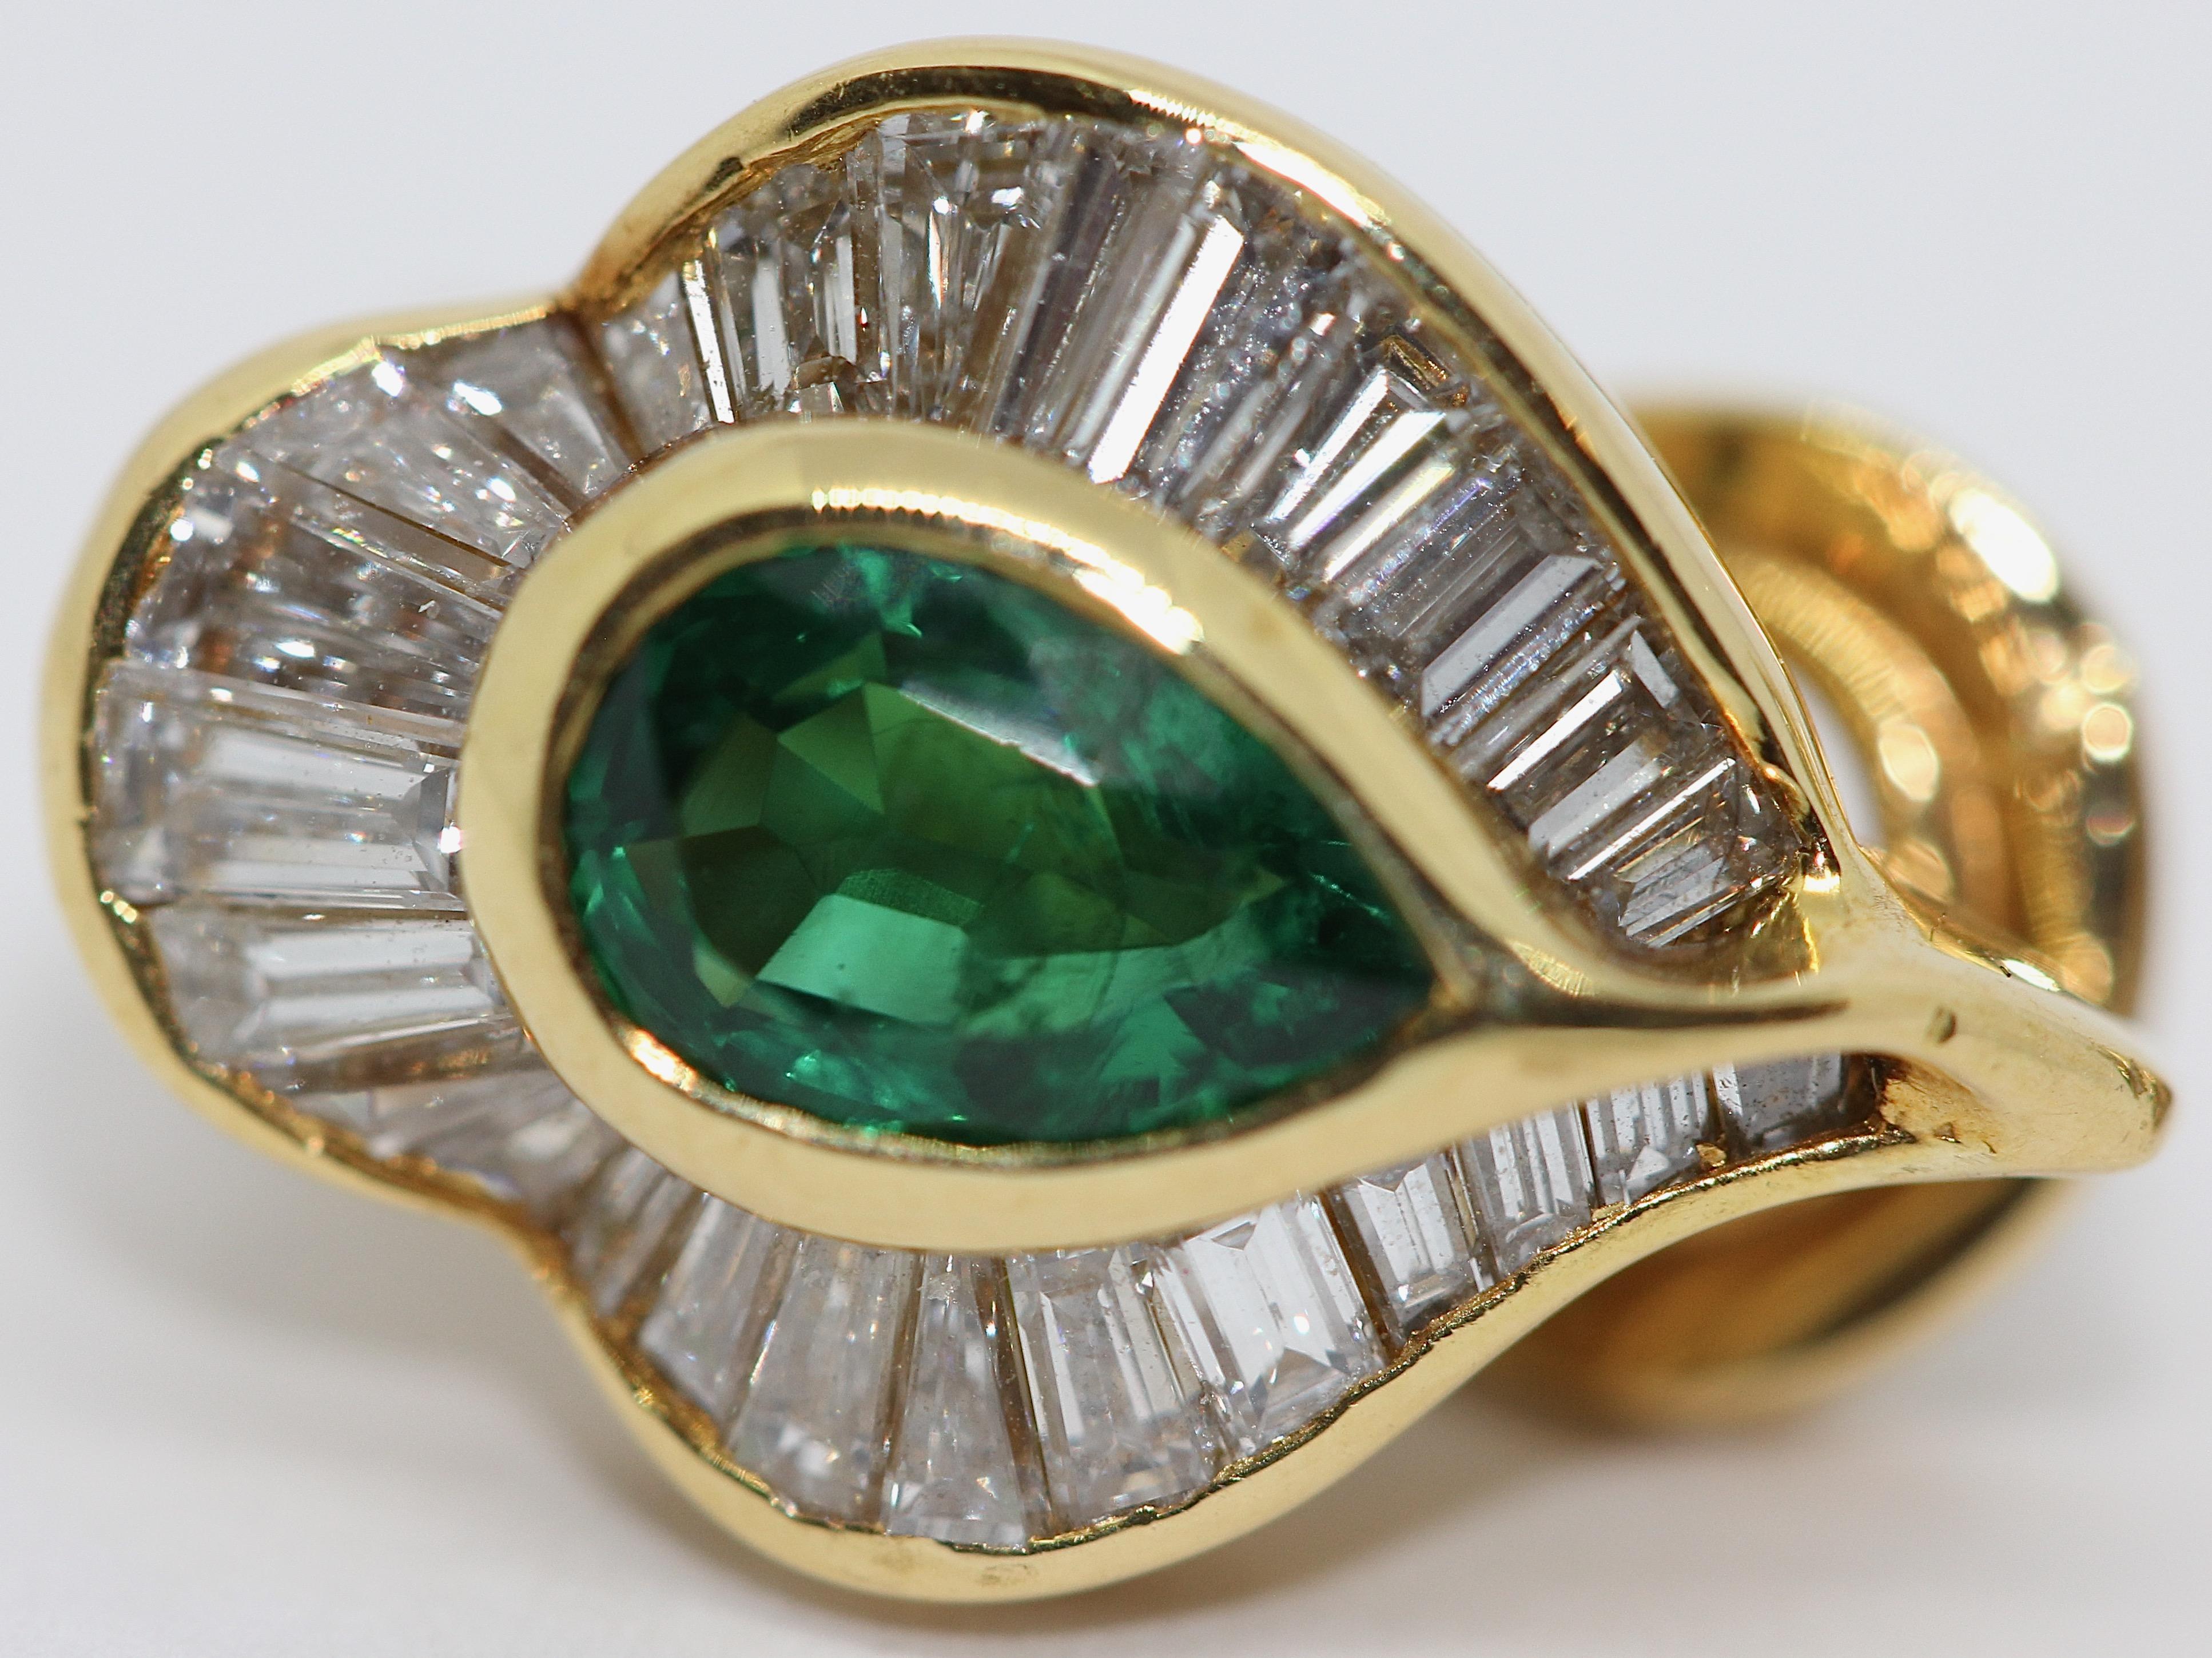 Women's Emerald Stud Earrings with 55 Diamonds, by Hans Stern, 18 Karat Gold